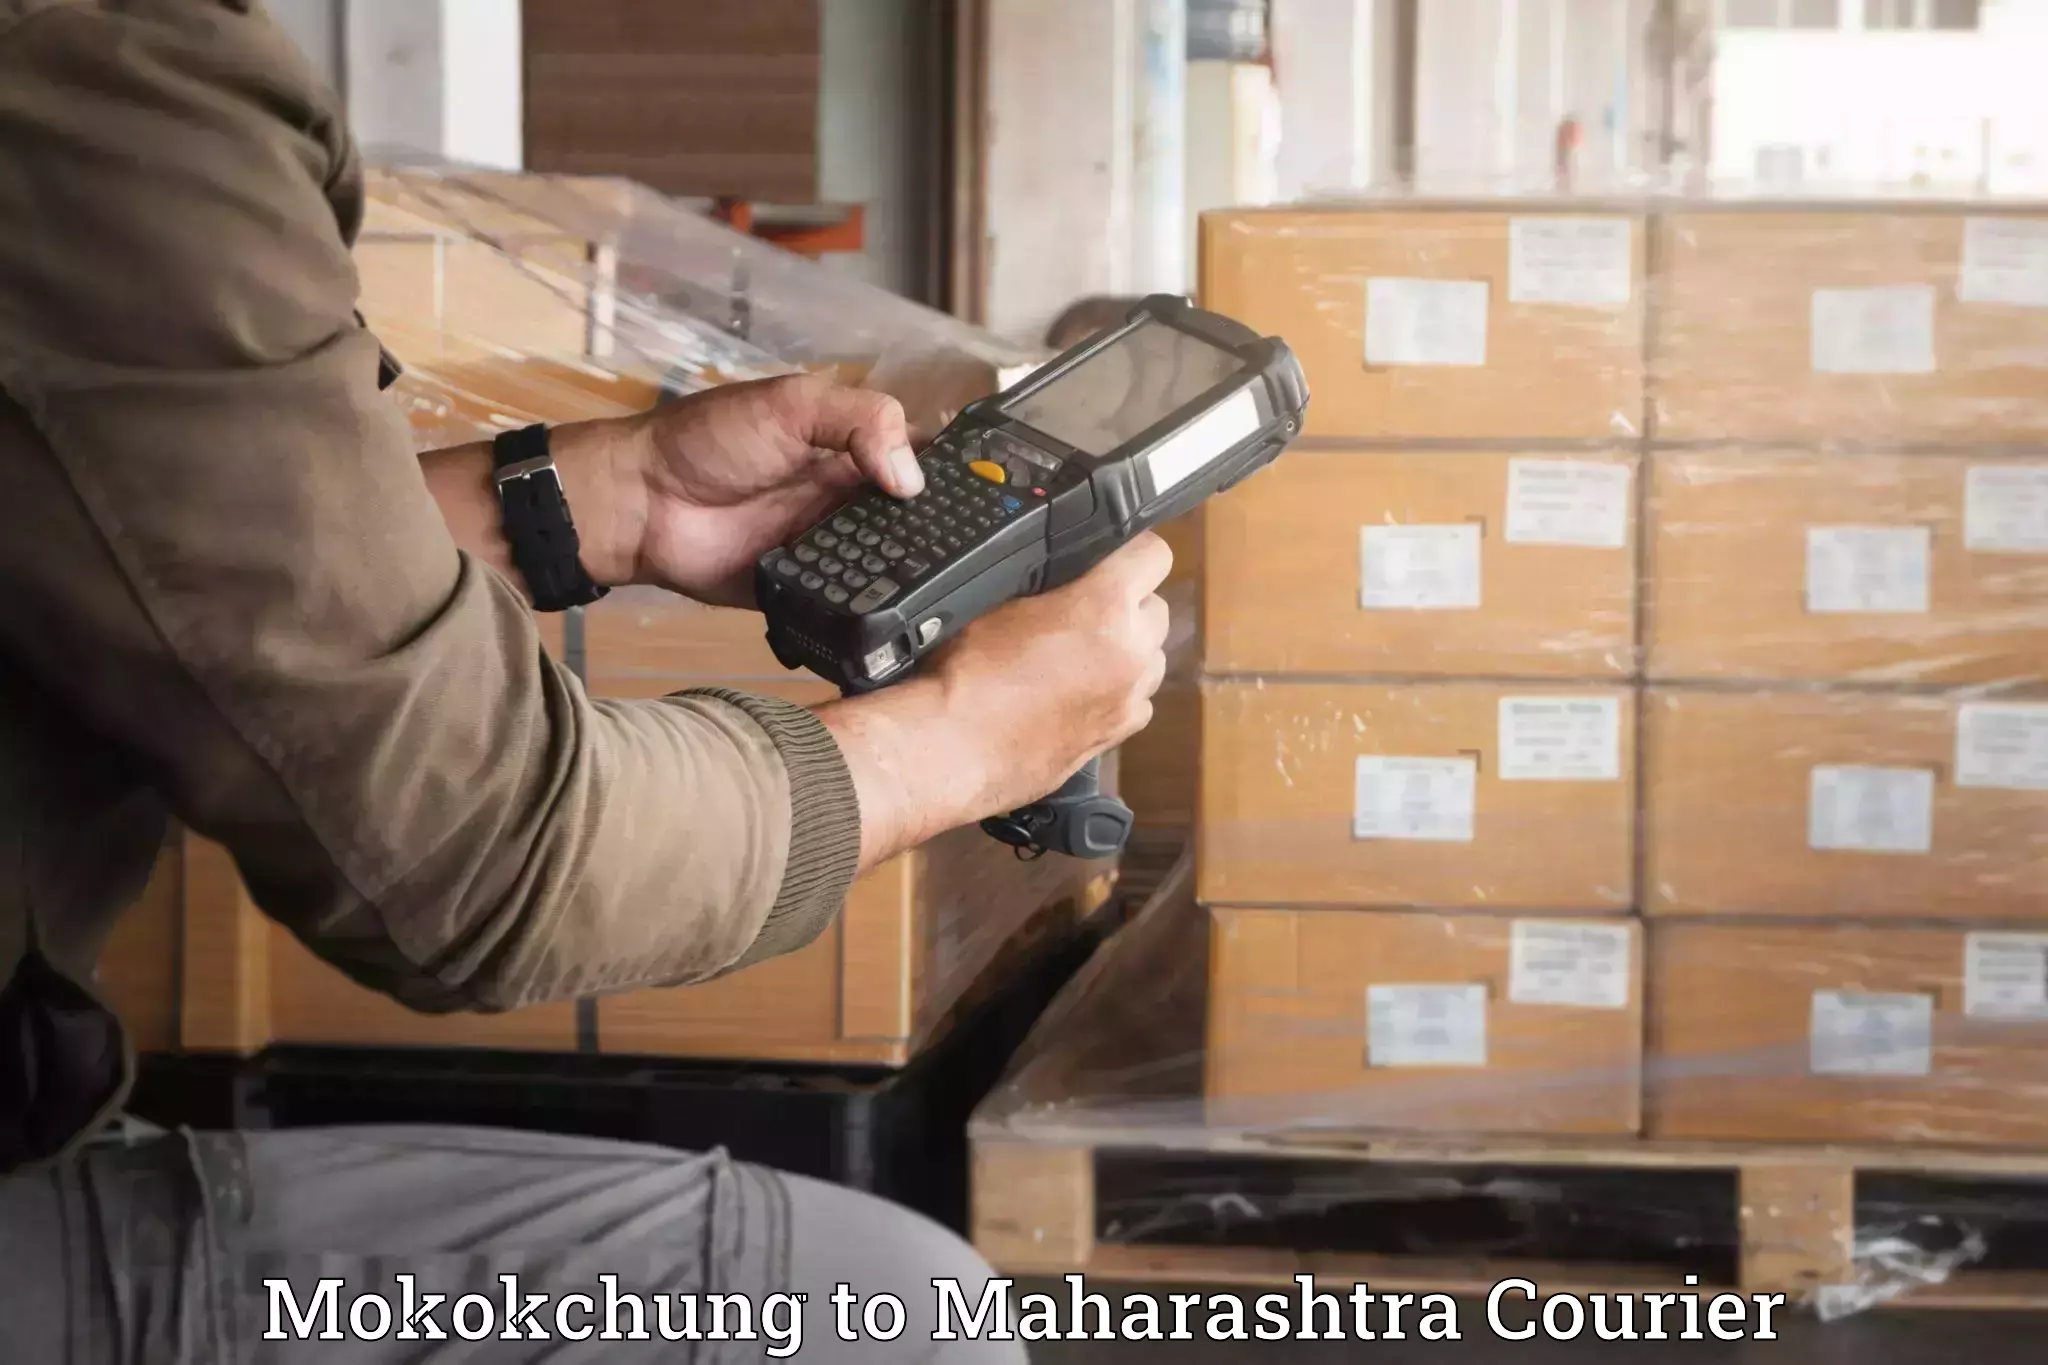 Furniture transport and logistics Mokokchung to Maharashtra